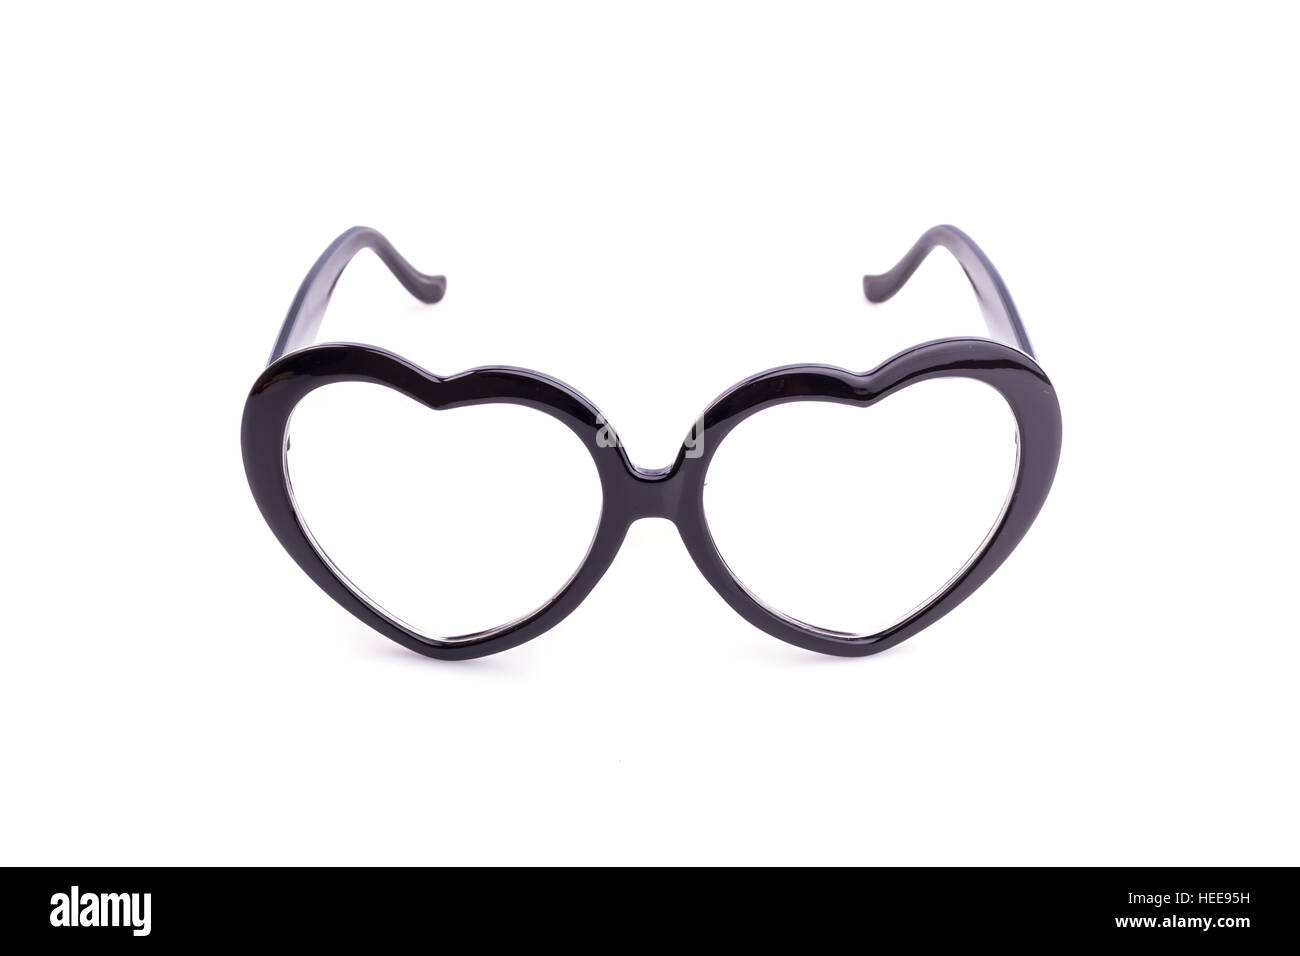 Close up black lunettes isolé sur fond blanc Banque D'Images